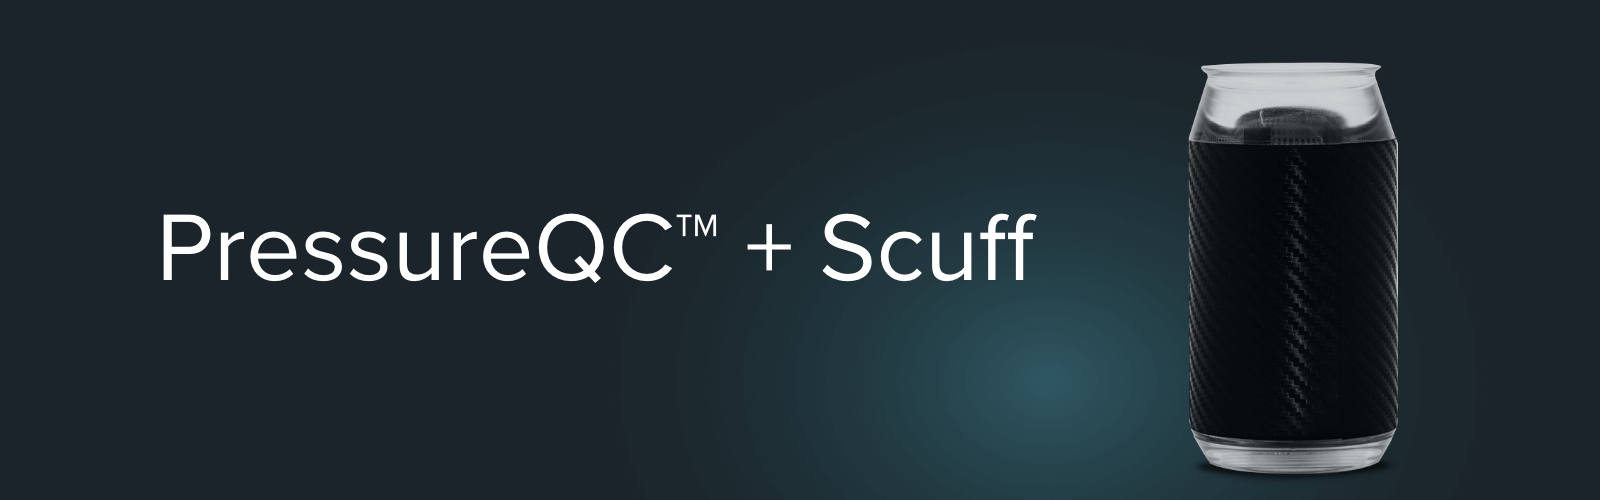 PressureQC+ Scuff Product Banner